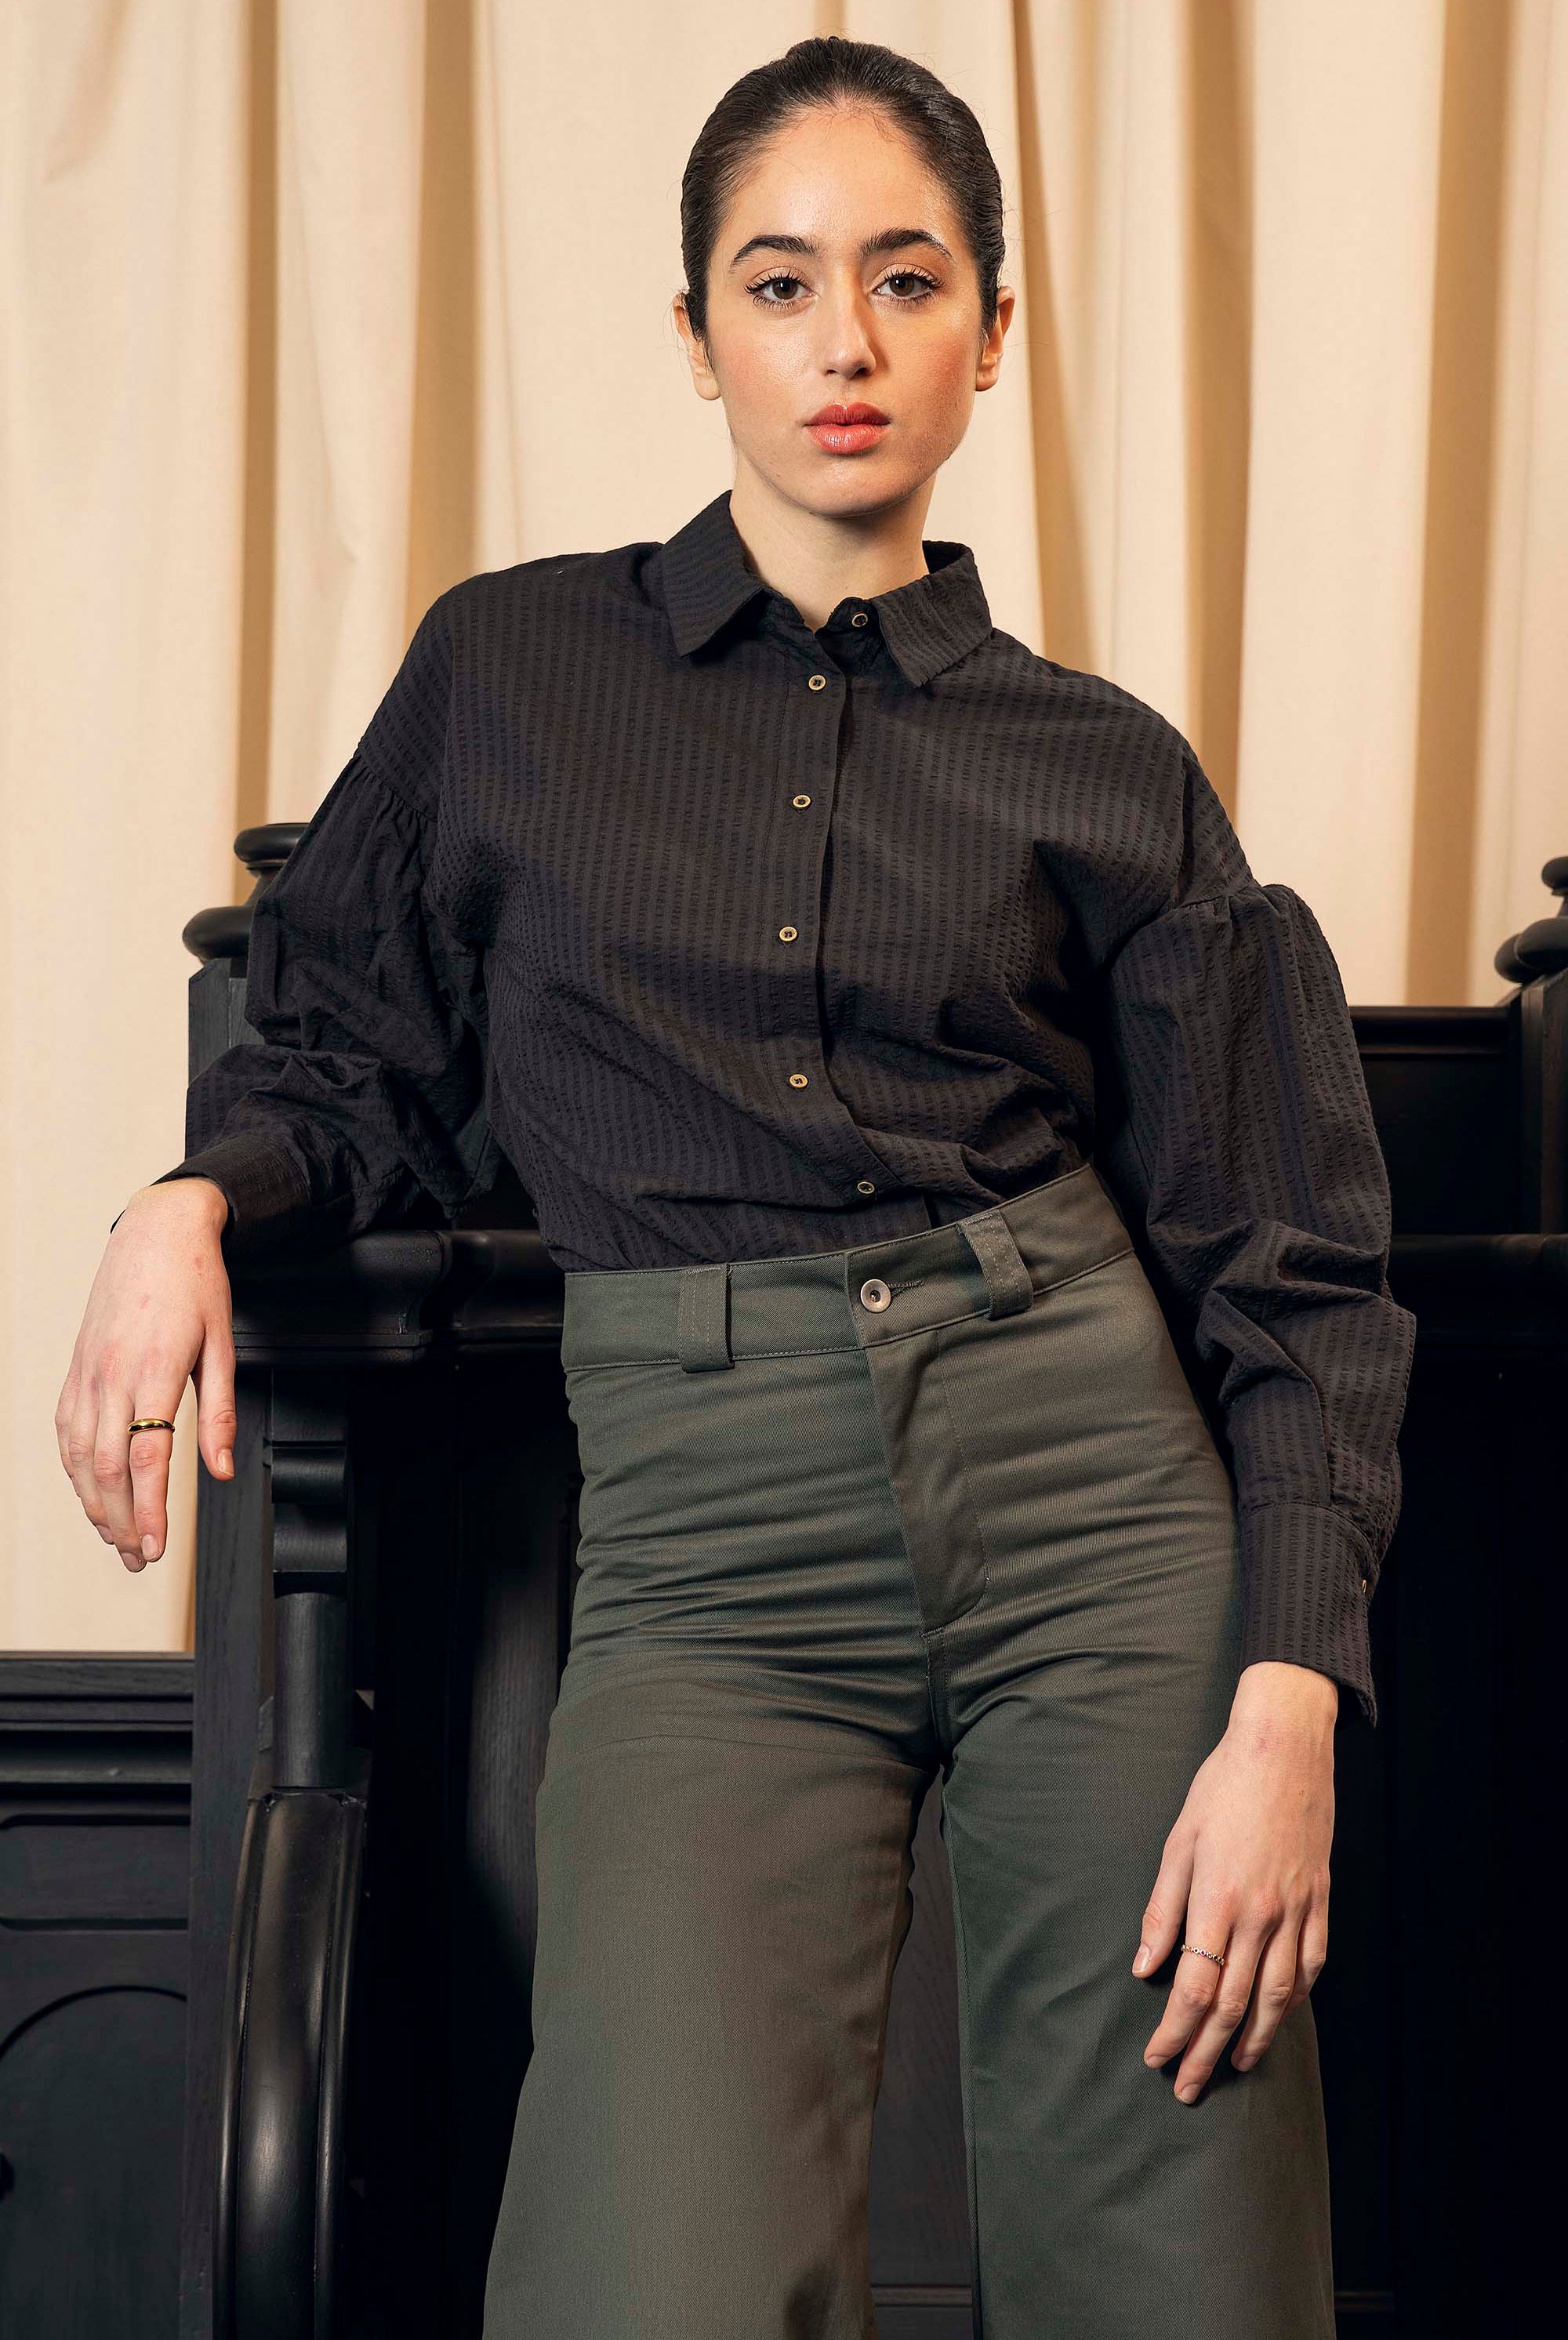 Chemise Rhoda Noir classique intemporelle, la chemise dessine la silhouette